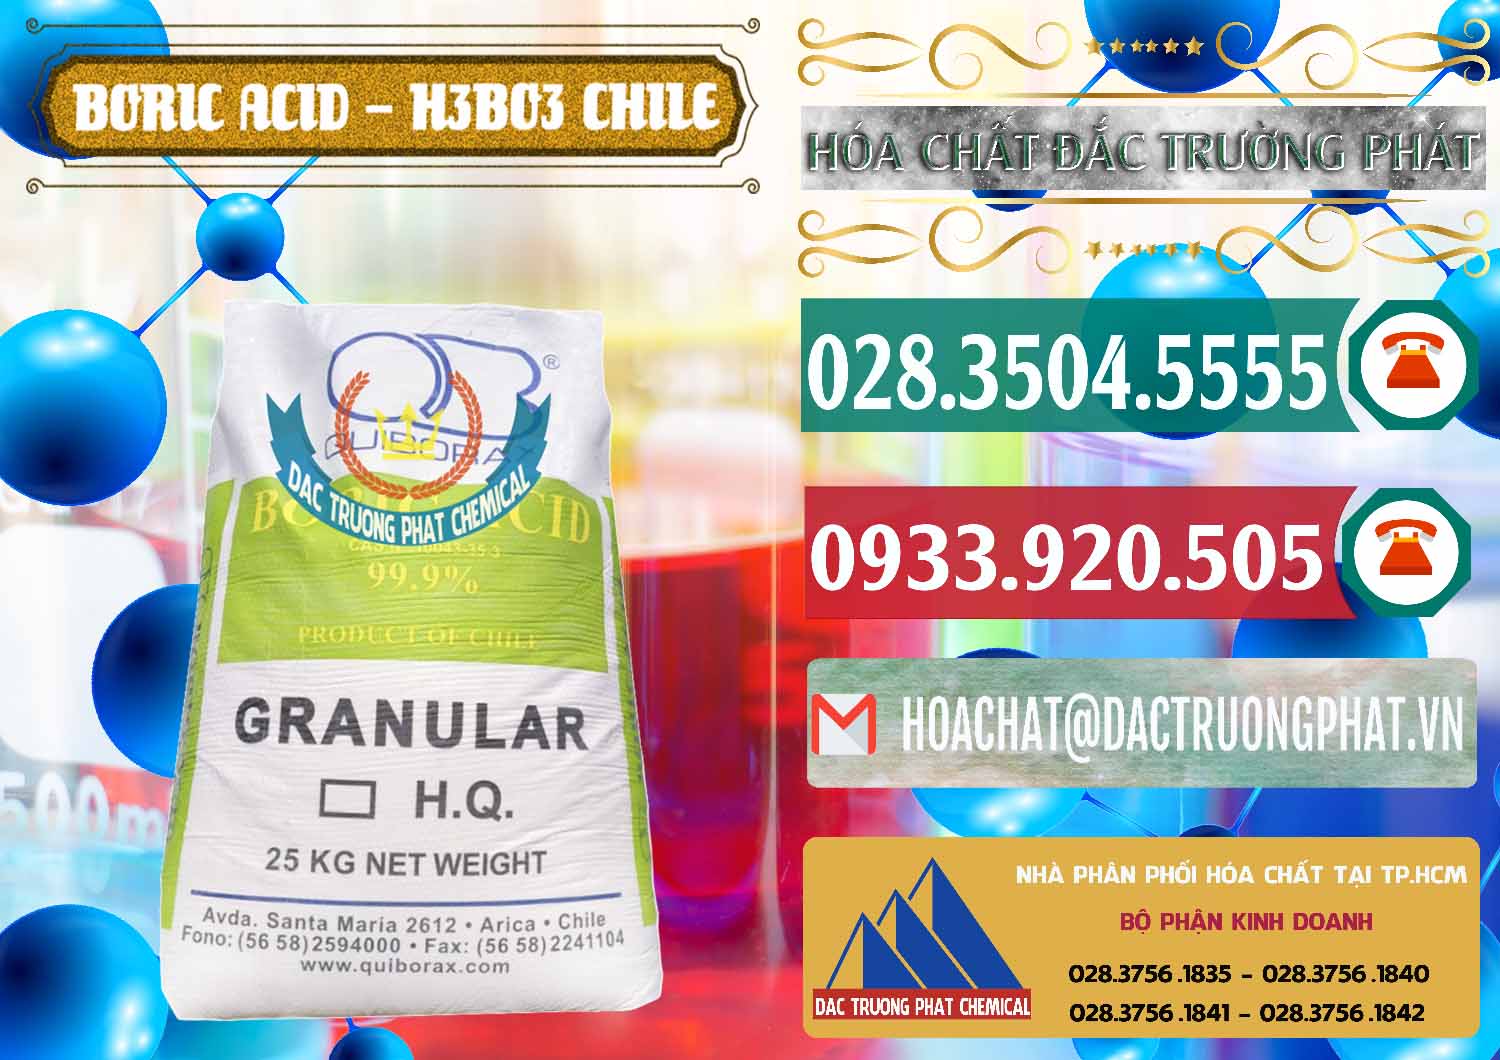 Nơi chuyên kinh doanh ( bán ) Acid Boric – Axit Boric H3BO3 99% Quiborax Chile - 0281 - Cty cung cấp ( kinh doanh ) hóa chất tại TP.HCM - muabanhoachat.vn